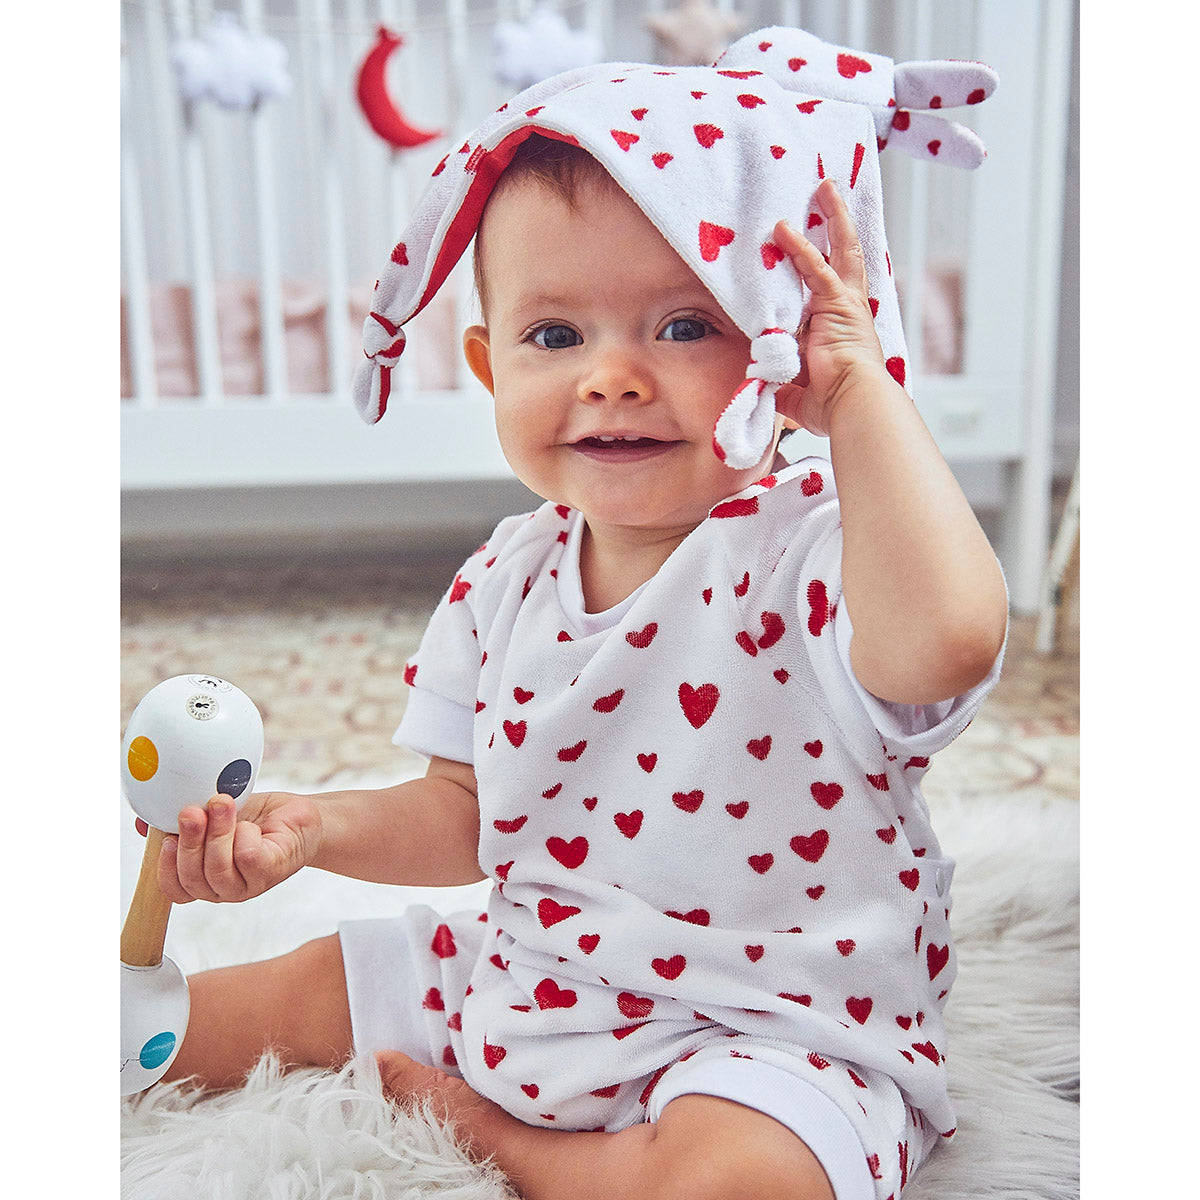 Livre de couture bébé BONNE NUIT Ebook – ikatee